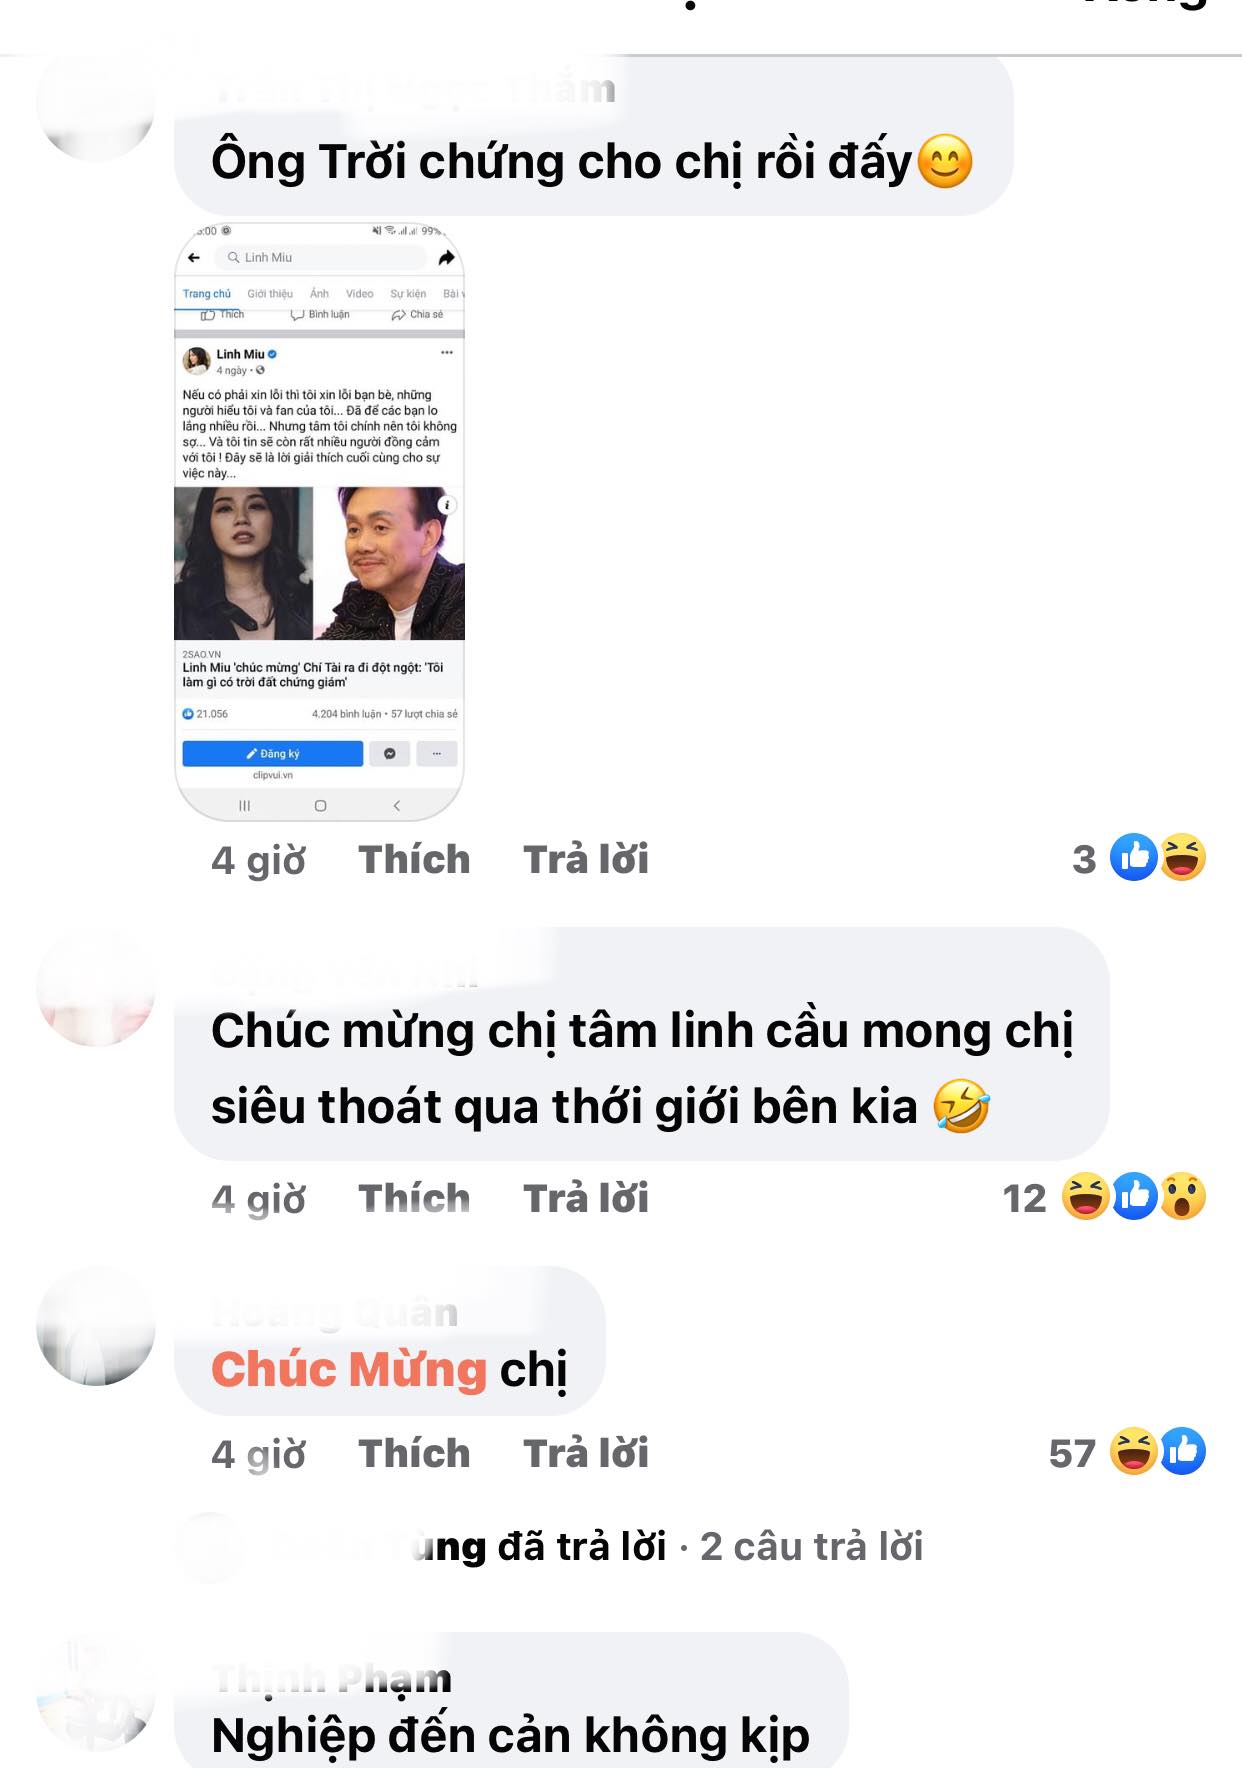 Linh-miu-nhap-vien-chi-tai-5